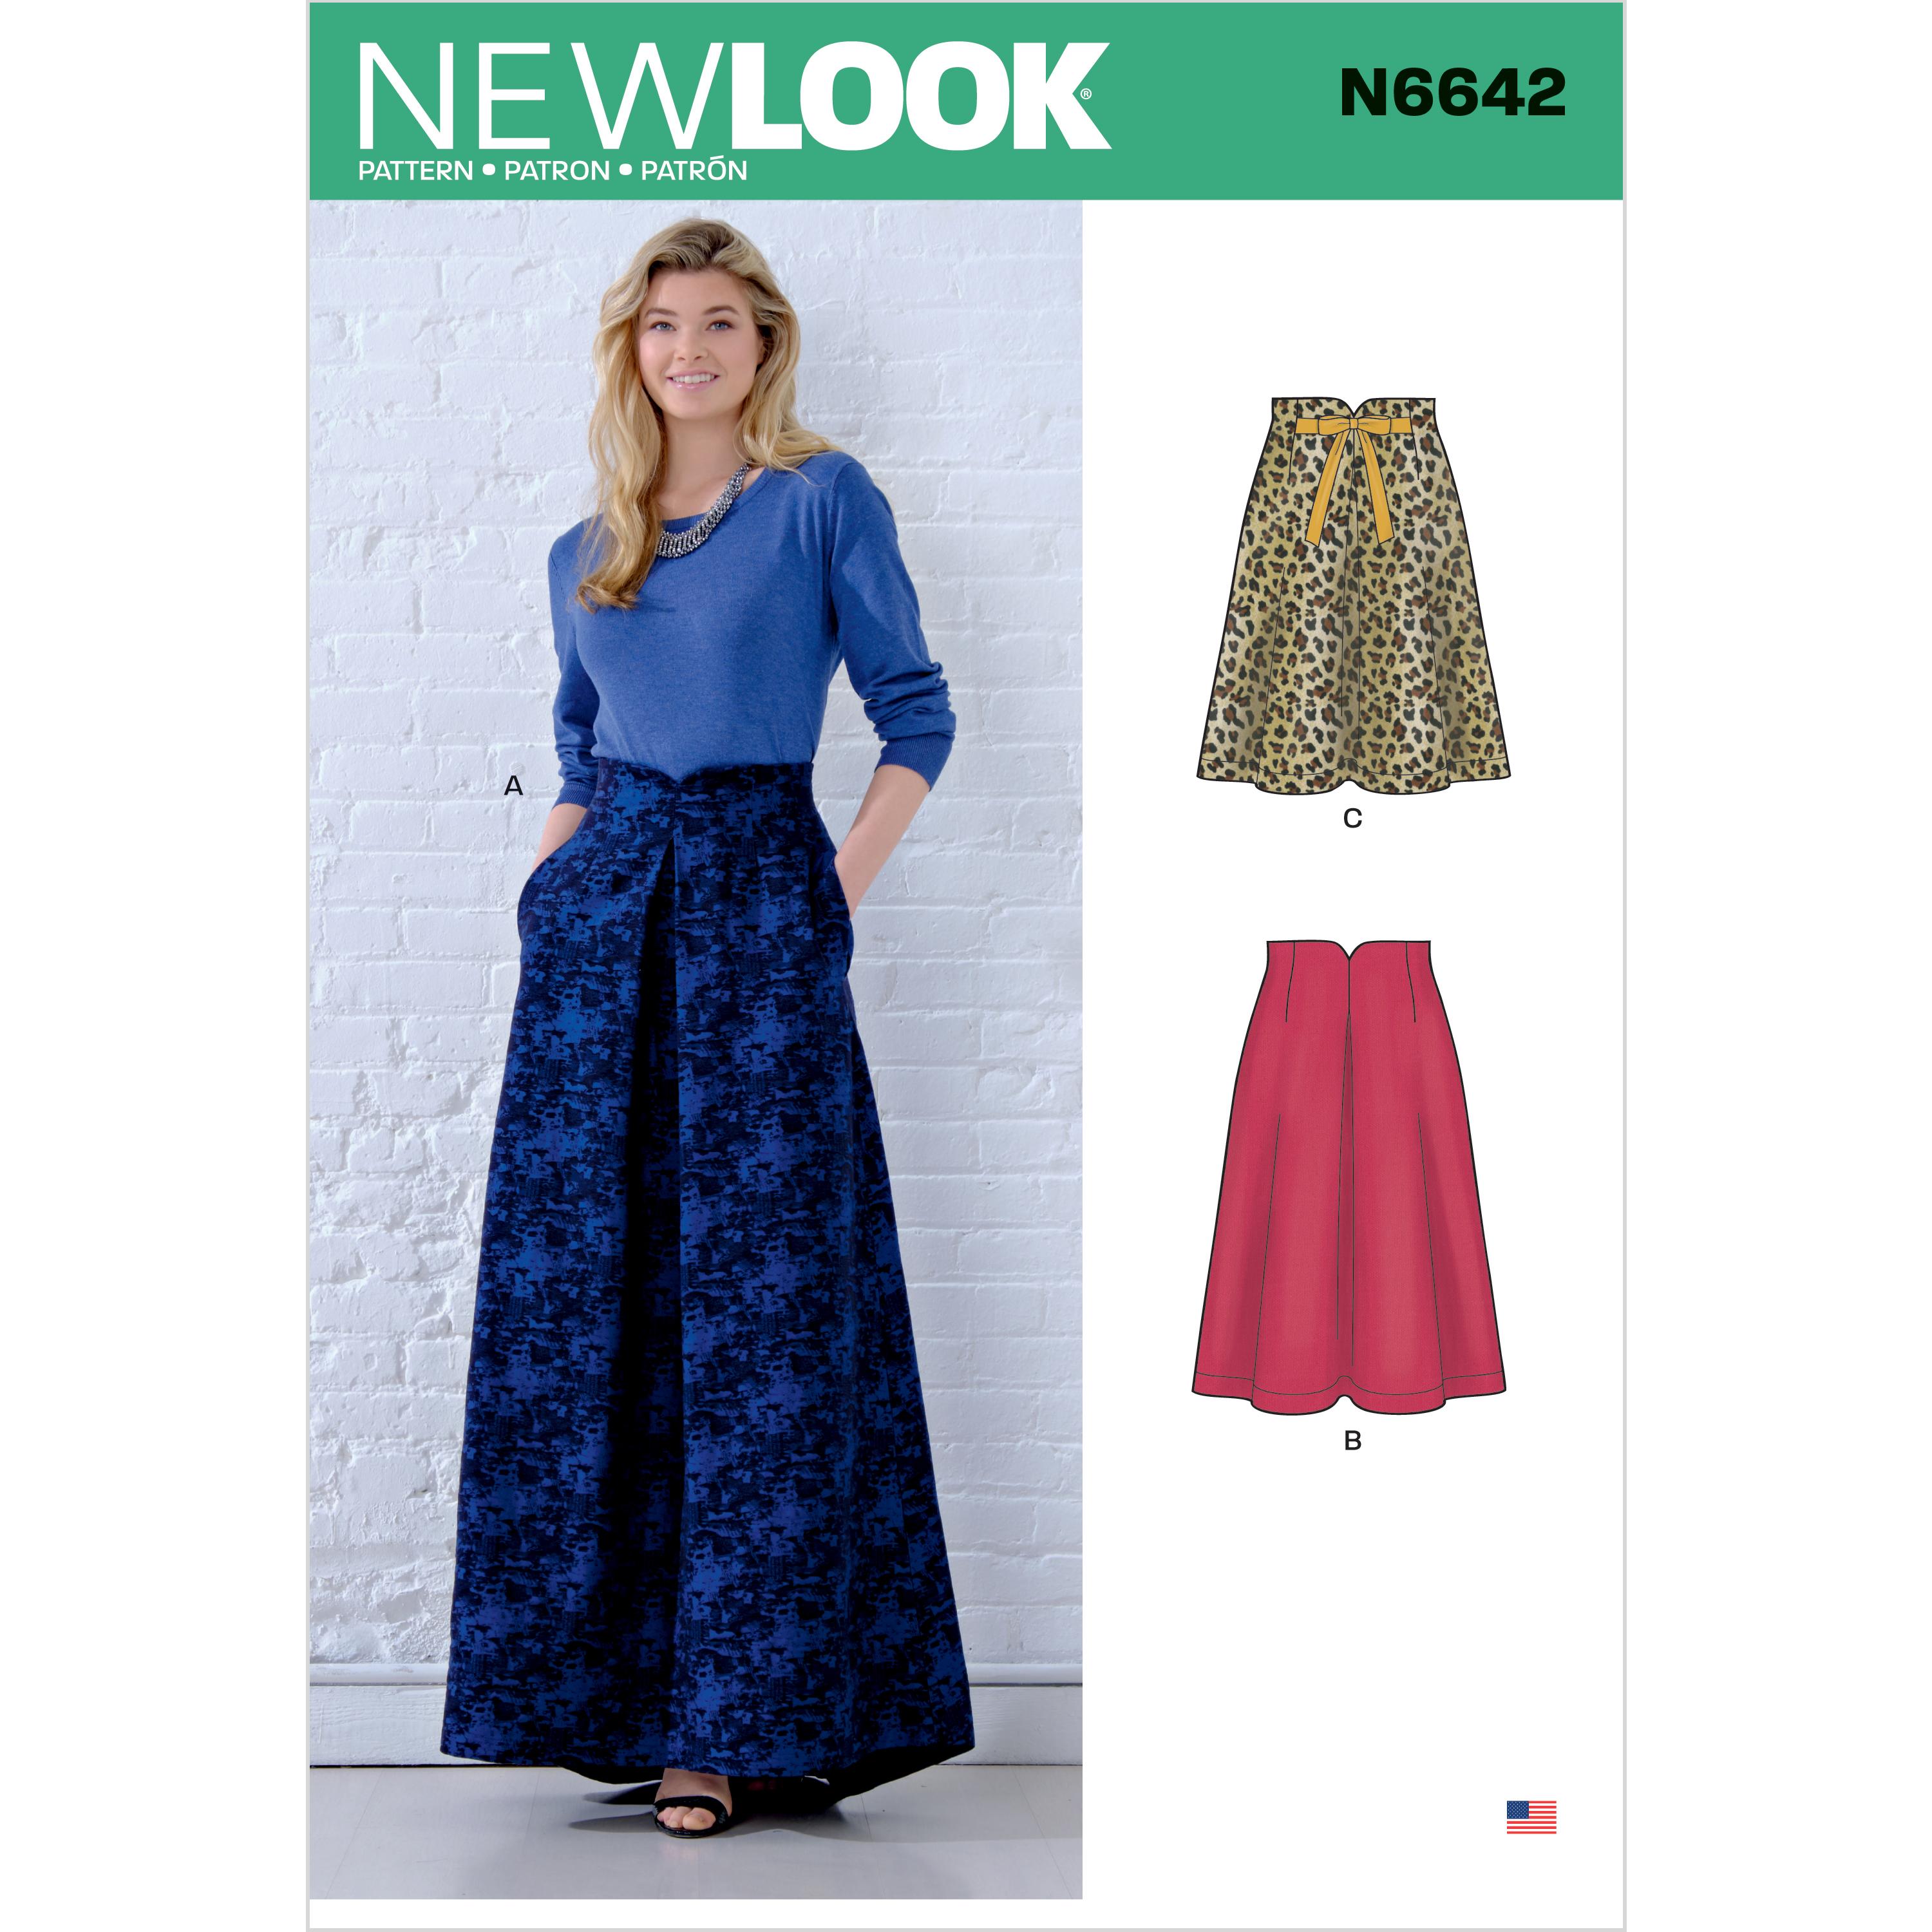 New Look Sewing Pattern N6642 Misses' Raised Waist Skirts